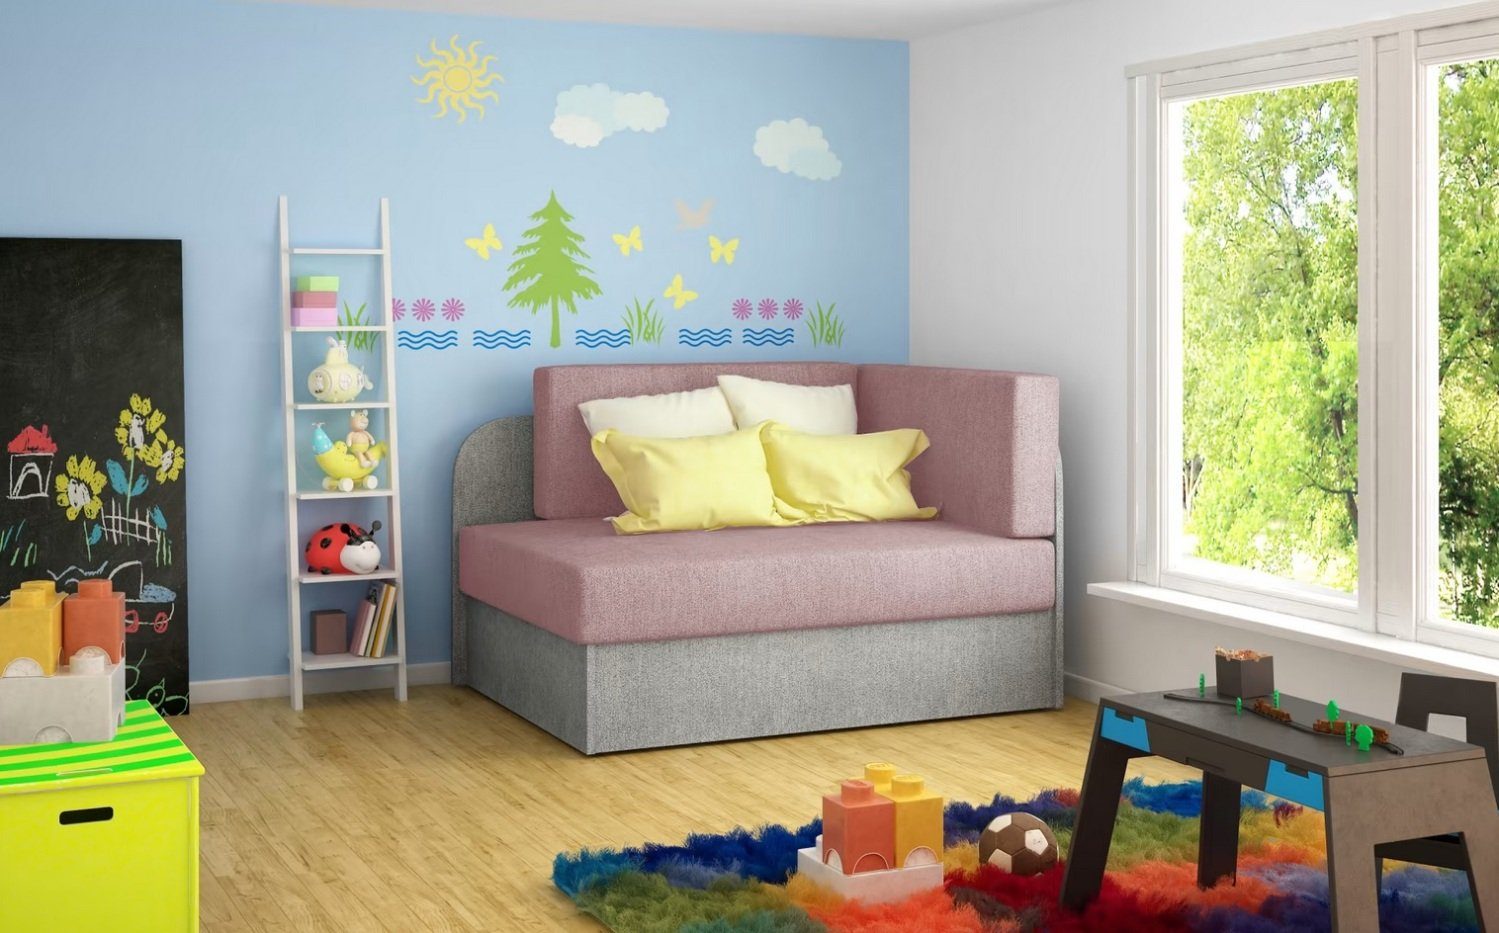 Schlafsofa Kinderzimmer kleines Sofa bequemes Bett Kinderbett Textil Sofort